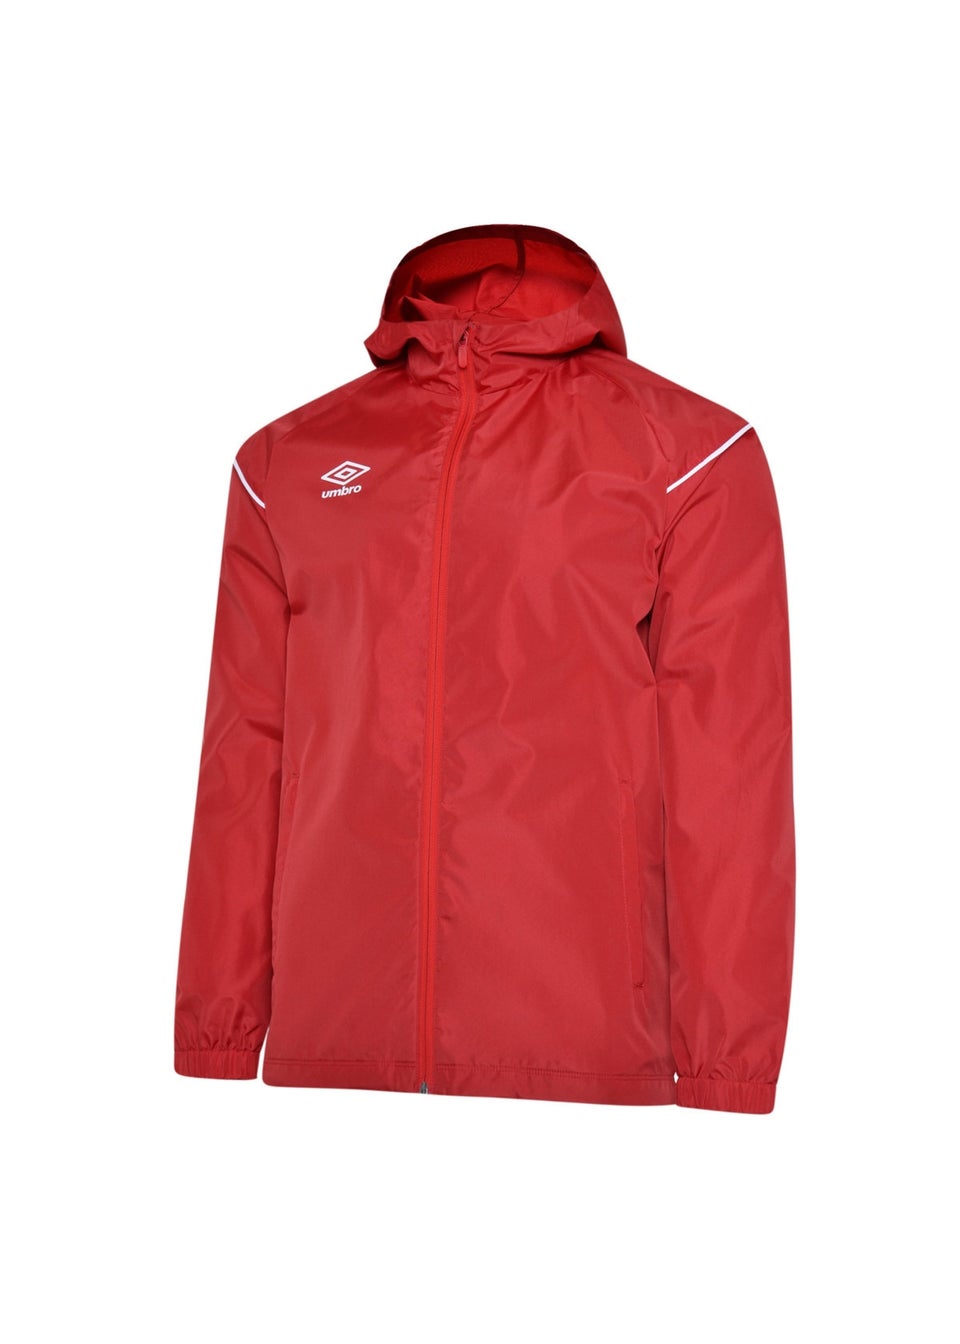 Umbro Kids Red Hooded Waterproof Jacket (7-13yrs)